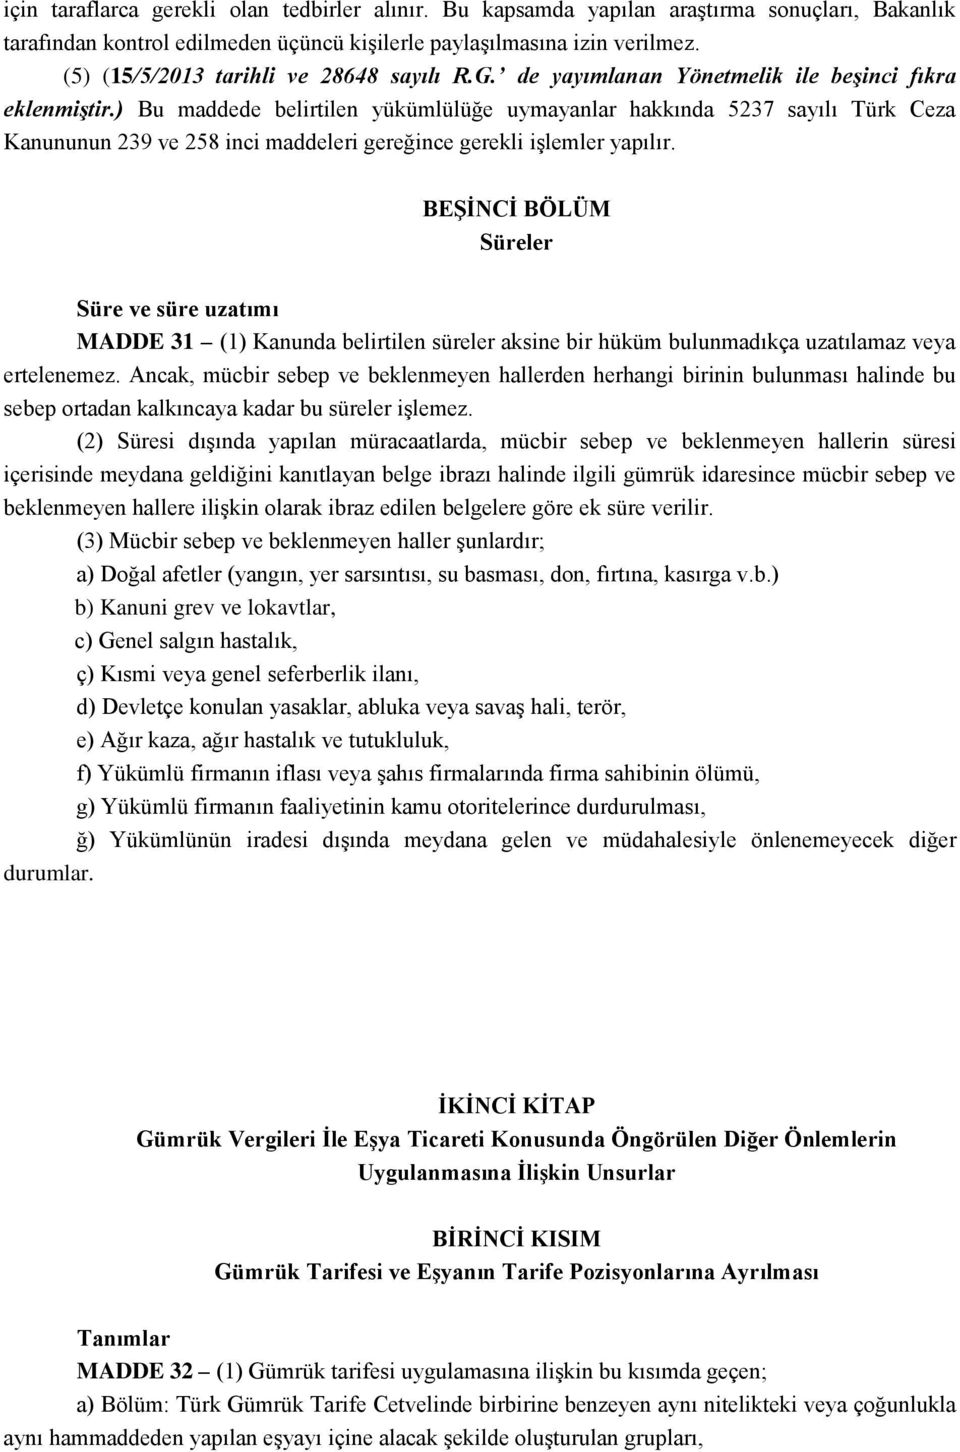 ) Bu maddede belirtilen yükümlülüğe uymayanlar hakkında 5237 sayılı Türk Ceza Kanununun 239 ve 258 inci maddeleri gereğince gerekli iģlemler yapılır.